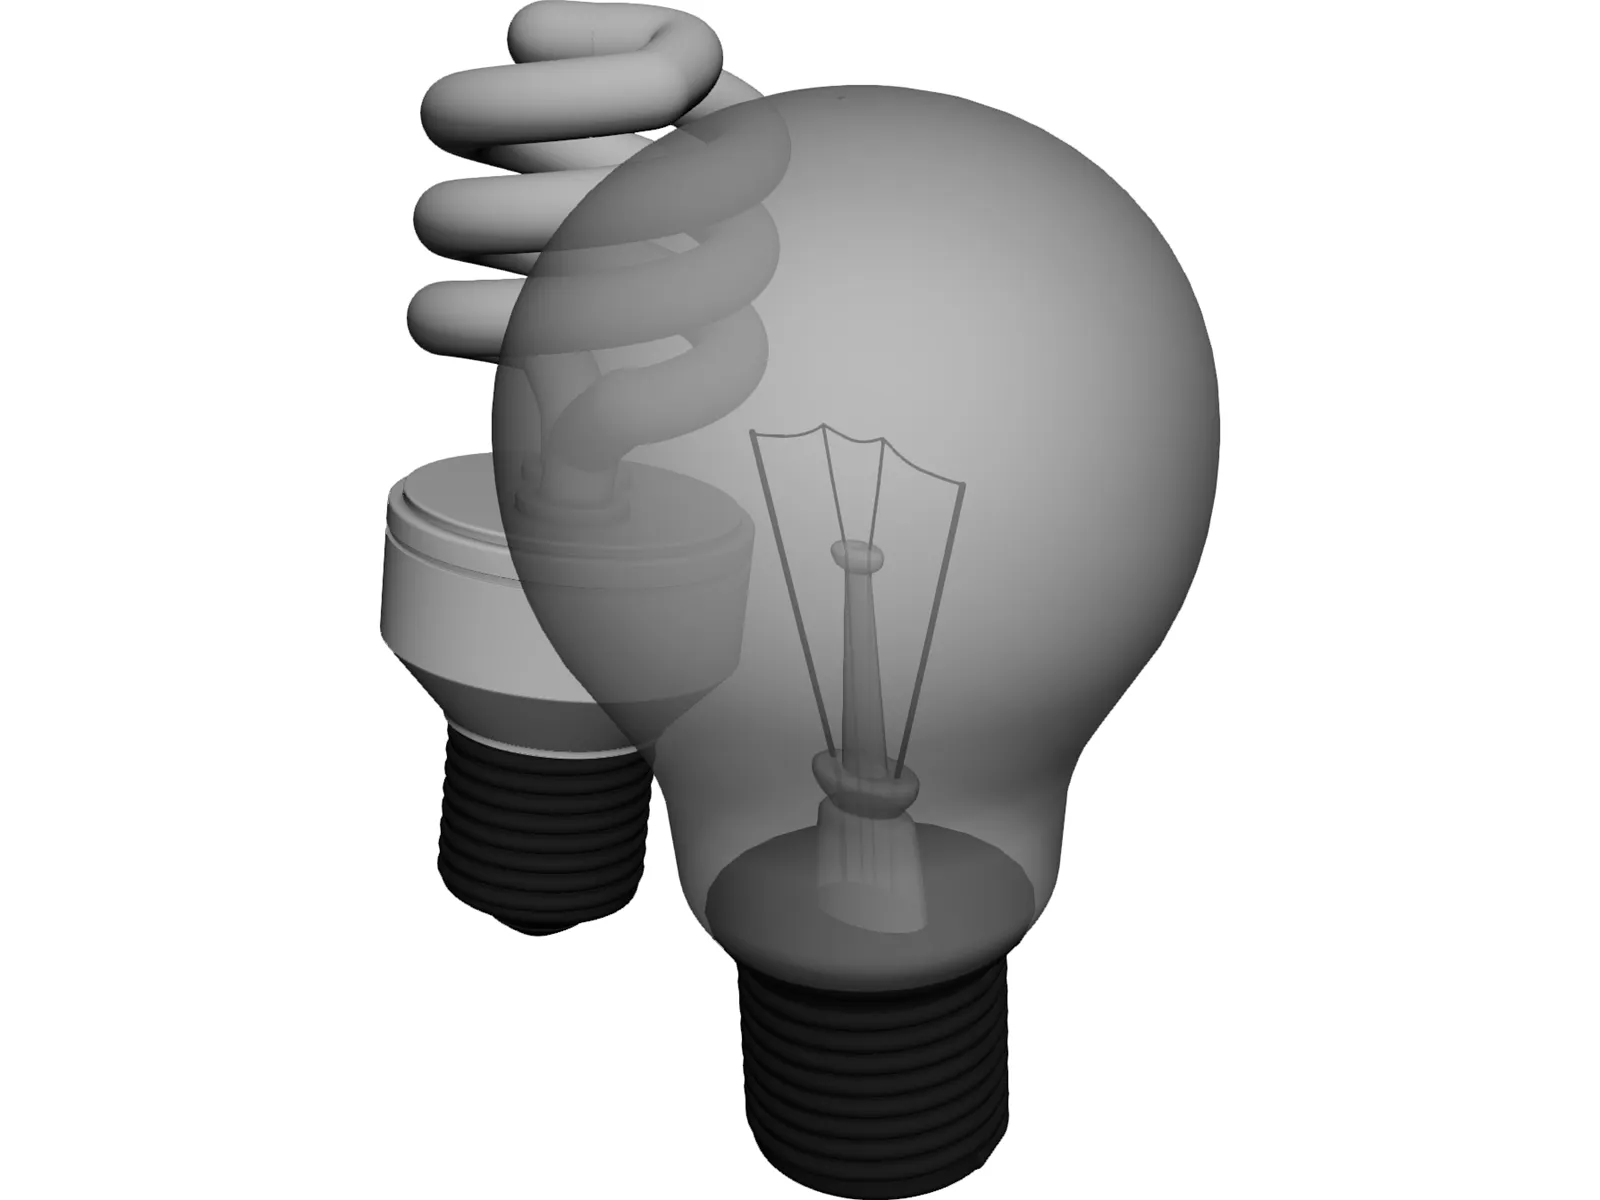 Giotto Dibondon Ordsprog Pogo stick spring Light Bulbs 3D Model - 3D CAD Browser